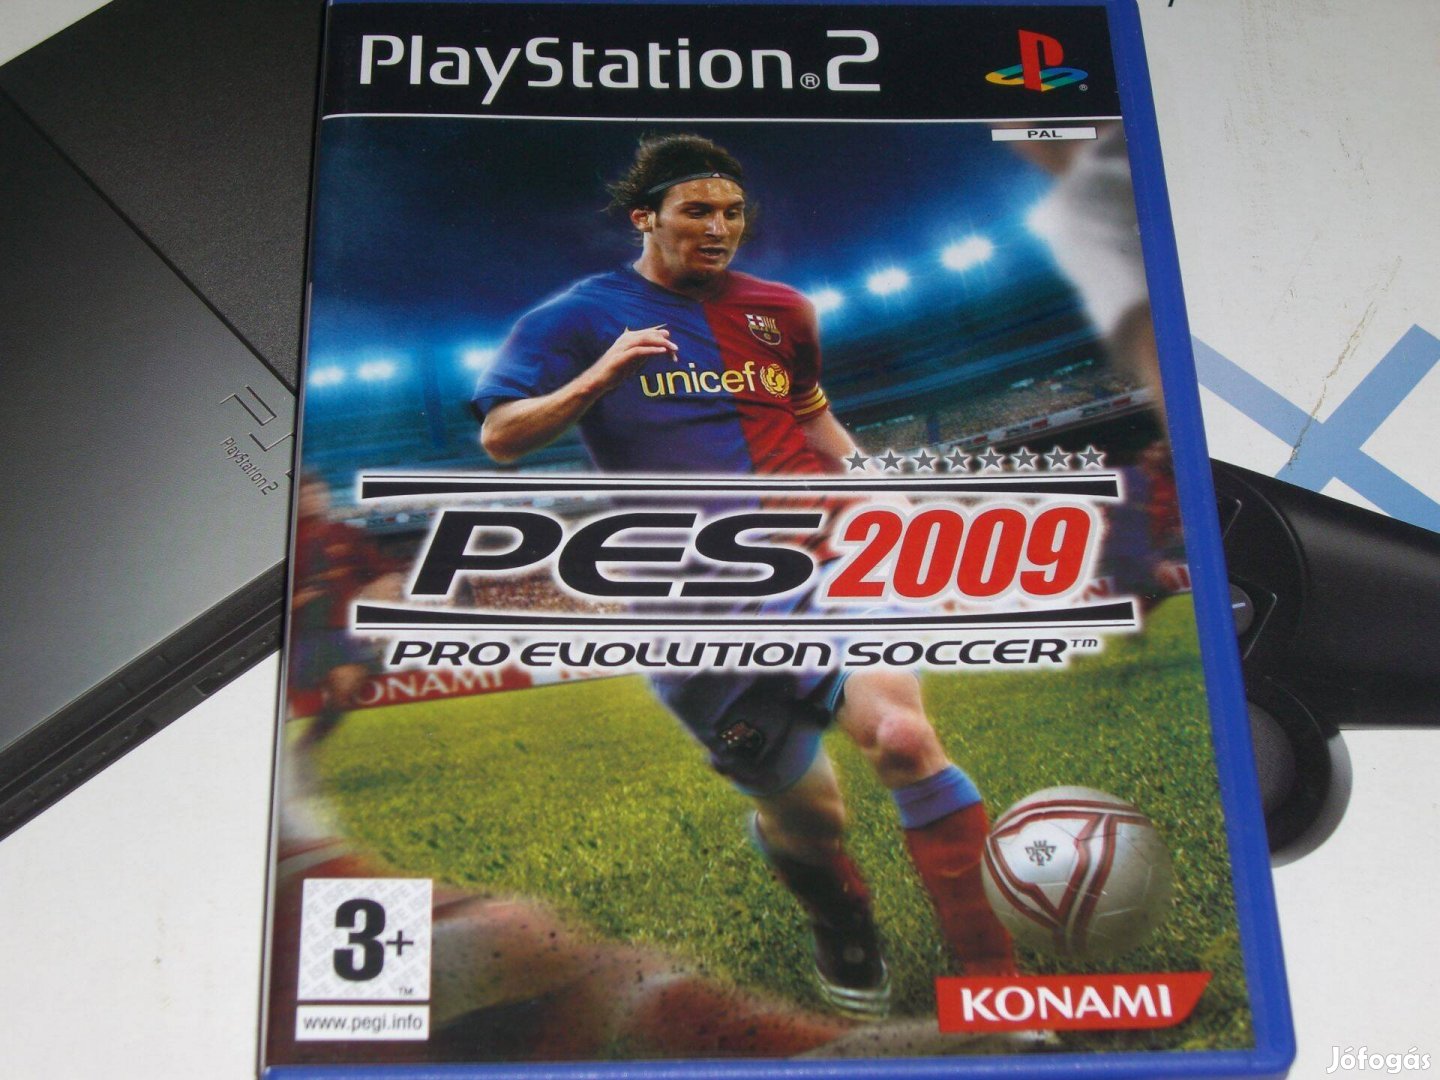 Pes 2009 - Playstation 2 eredeti lemez eladó